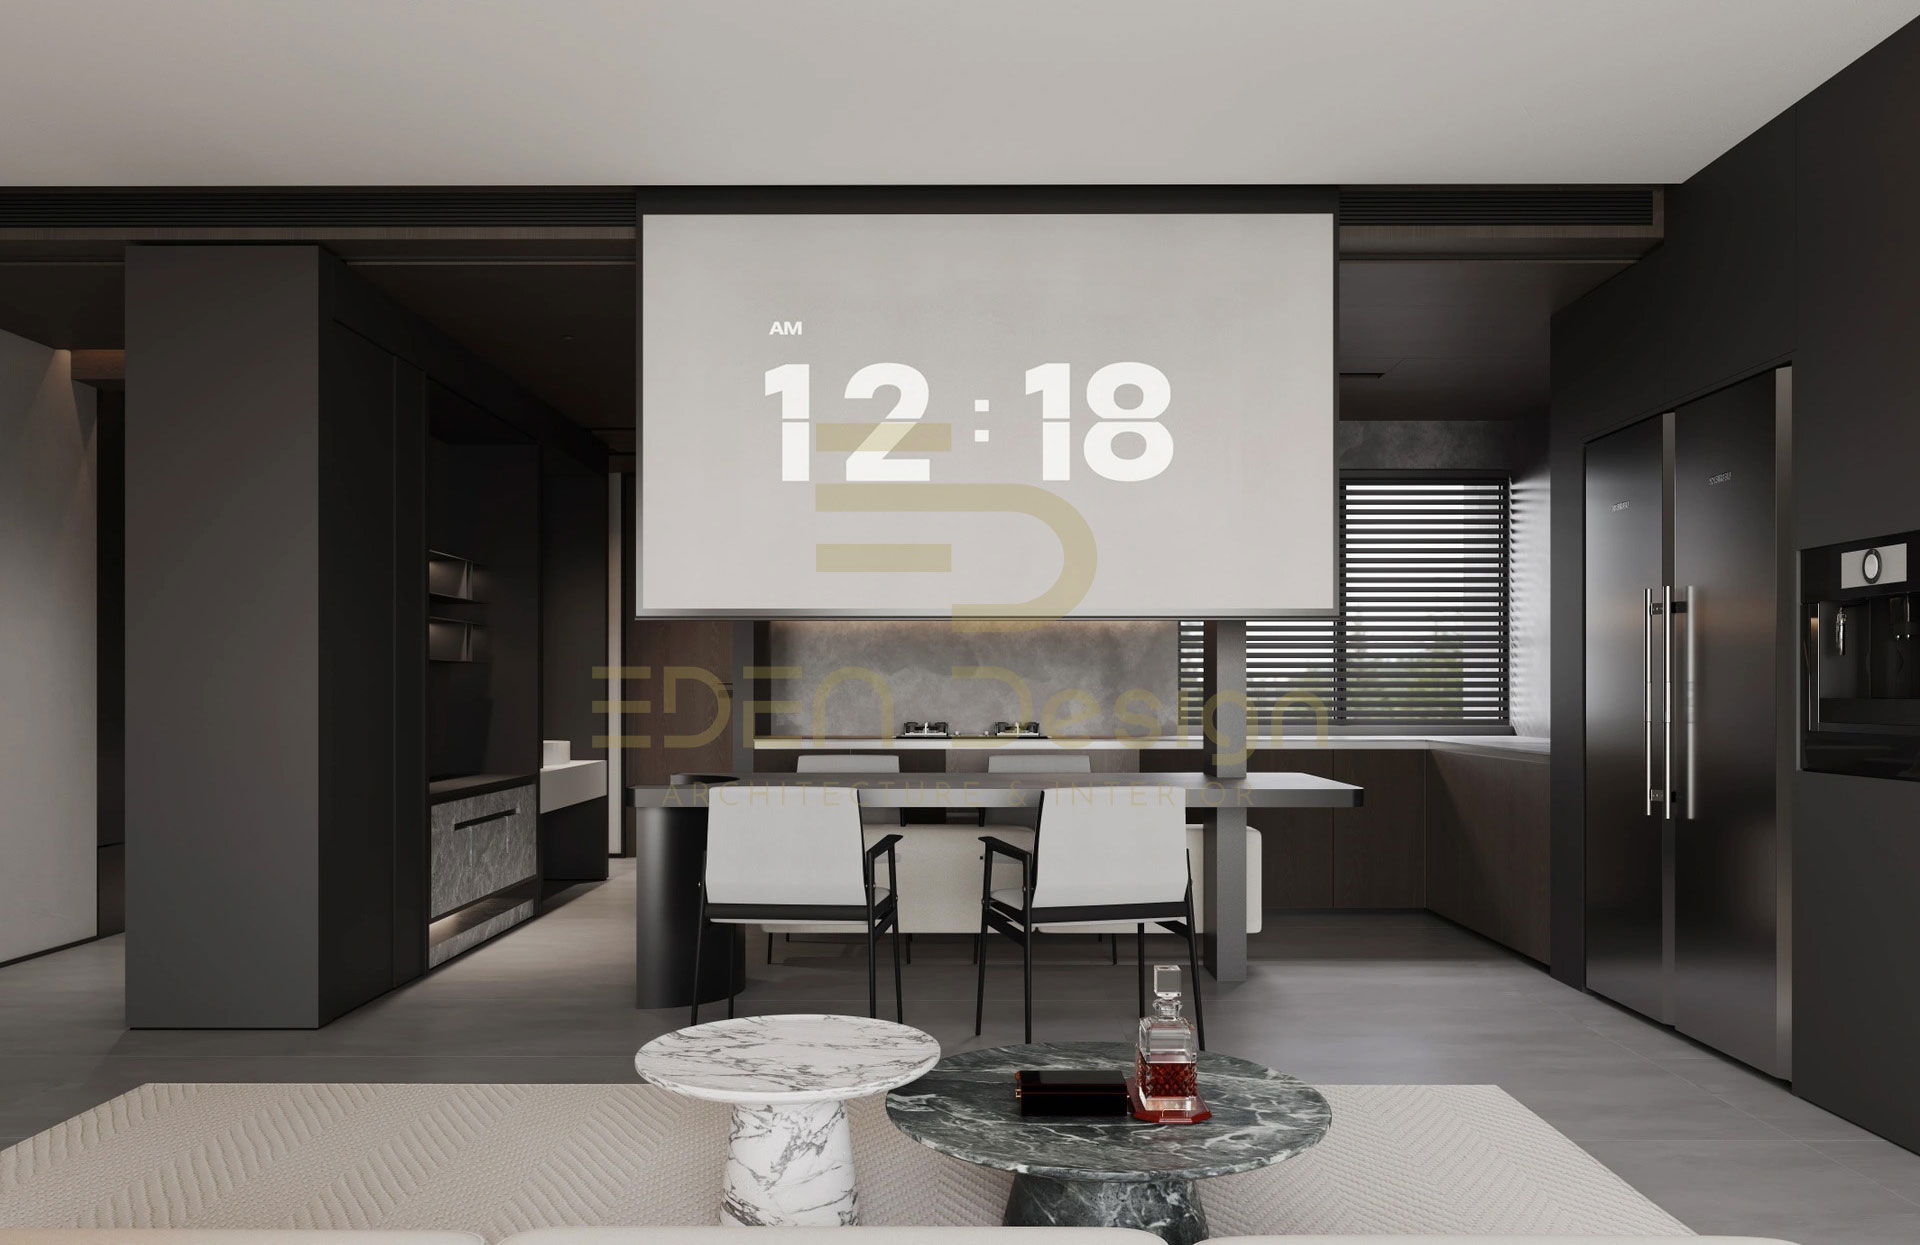 Thiết kế căn hộ 1 phòng ngủ hiện đại và tinh tế – anh Chiến